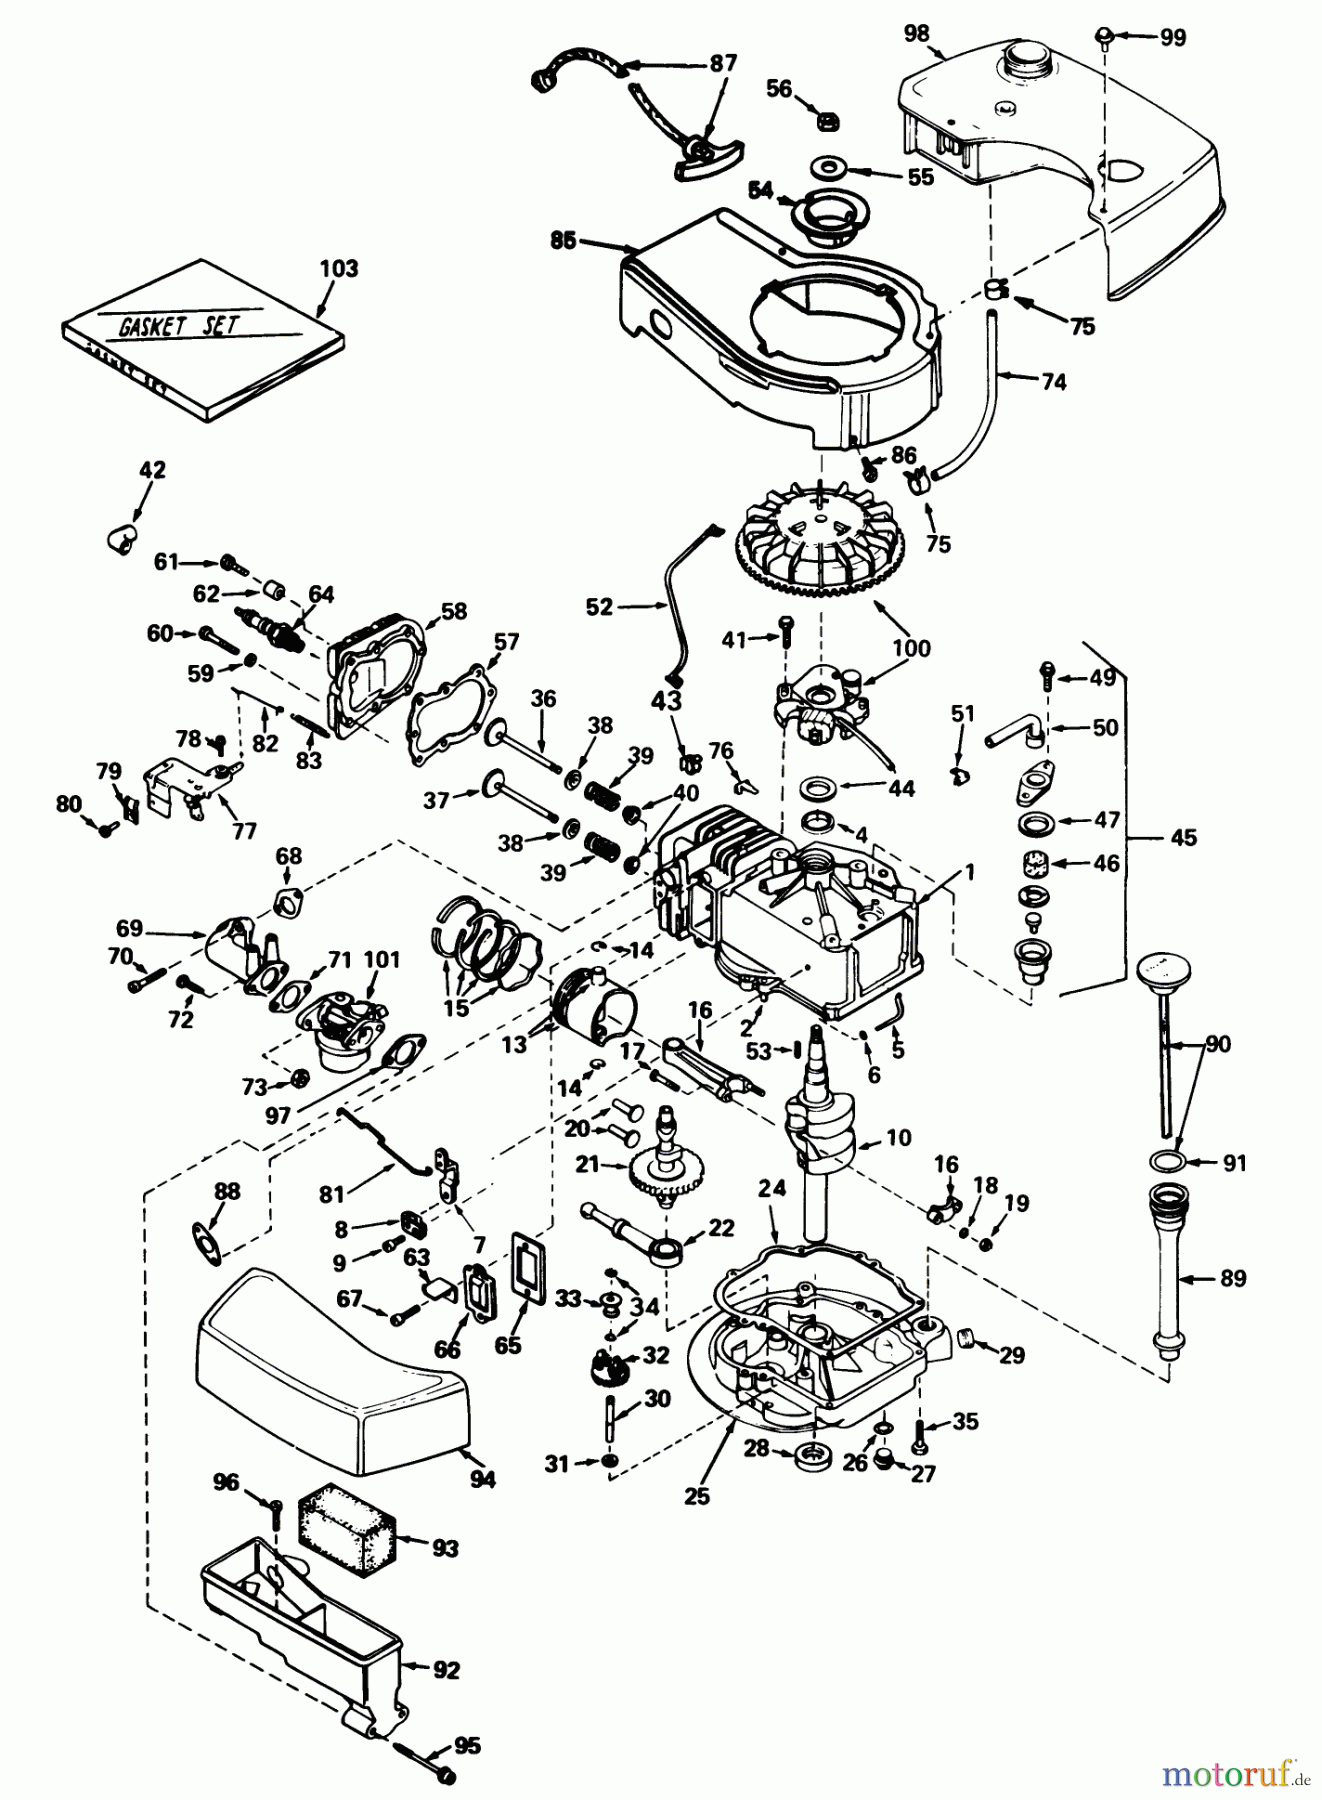  Toro Neu Mowers, Walk-Behind Seite 2 21738 - Toro Whirlwind Lawnmower, 1978 (8000001-8999999) ENGINE TECUMSEH MODEL NO. TNT 100-10056A (MOWER MODEL NO. 21738) #1